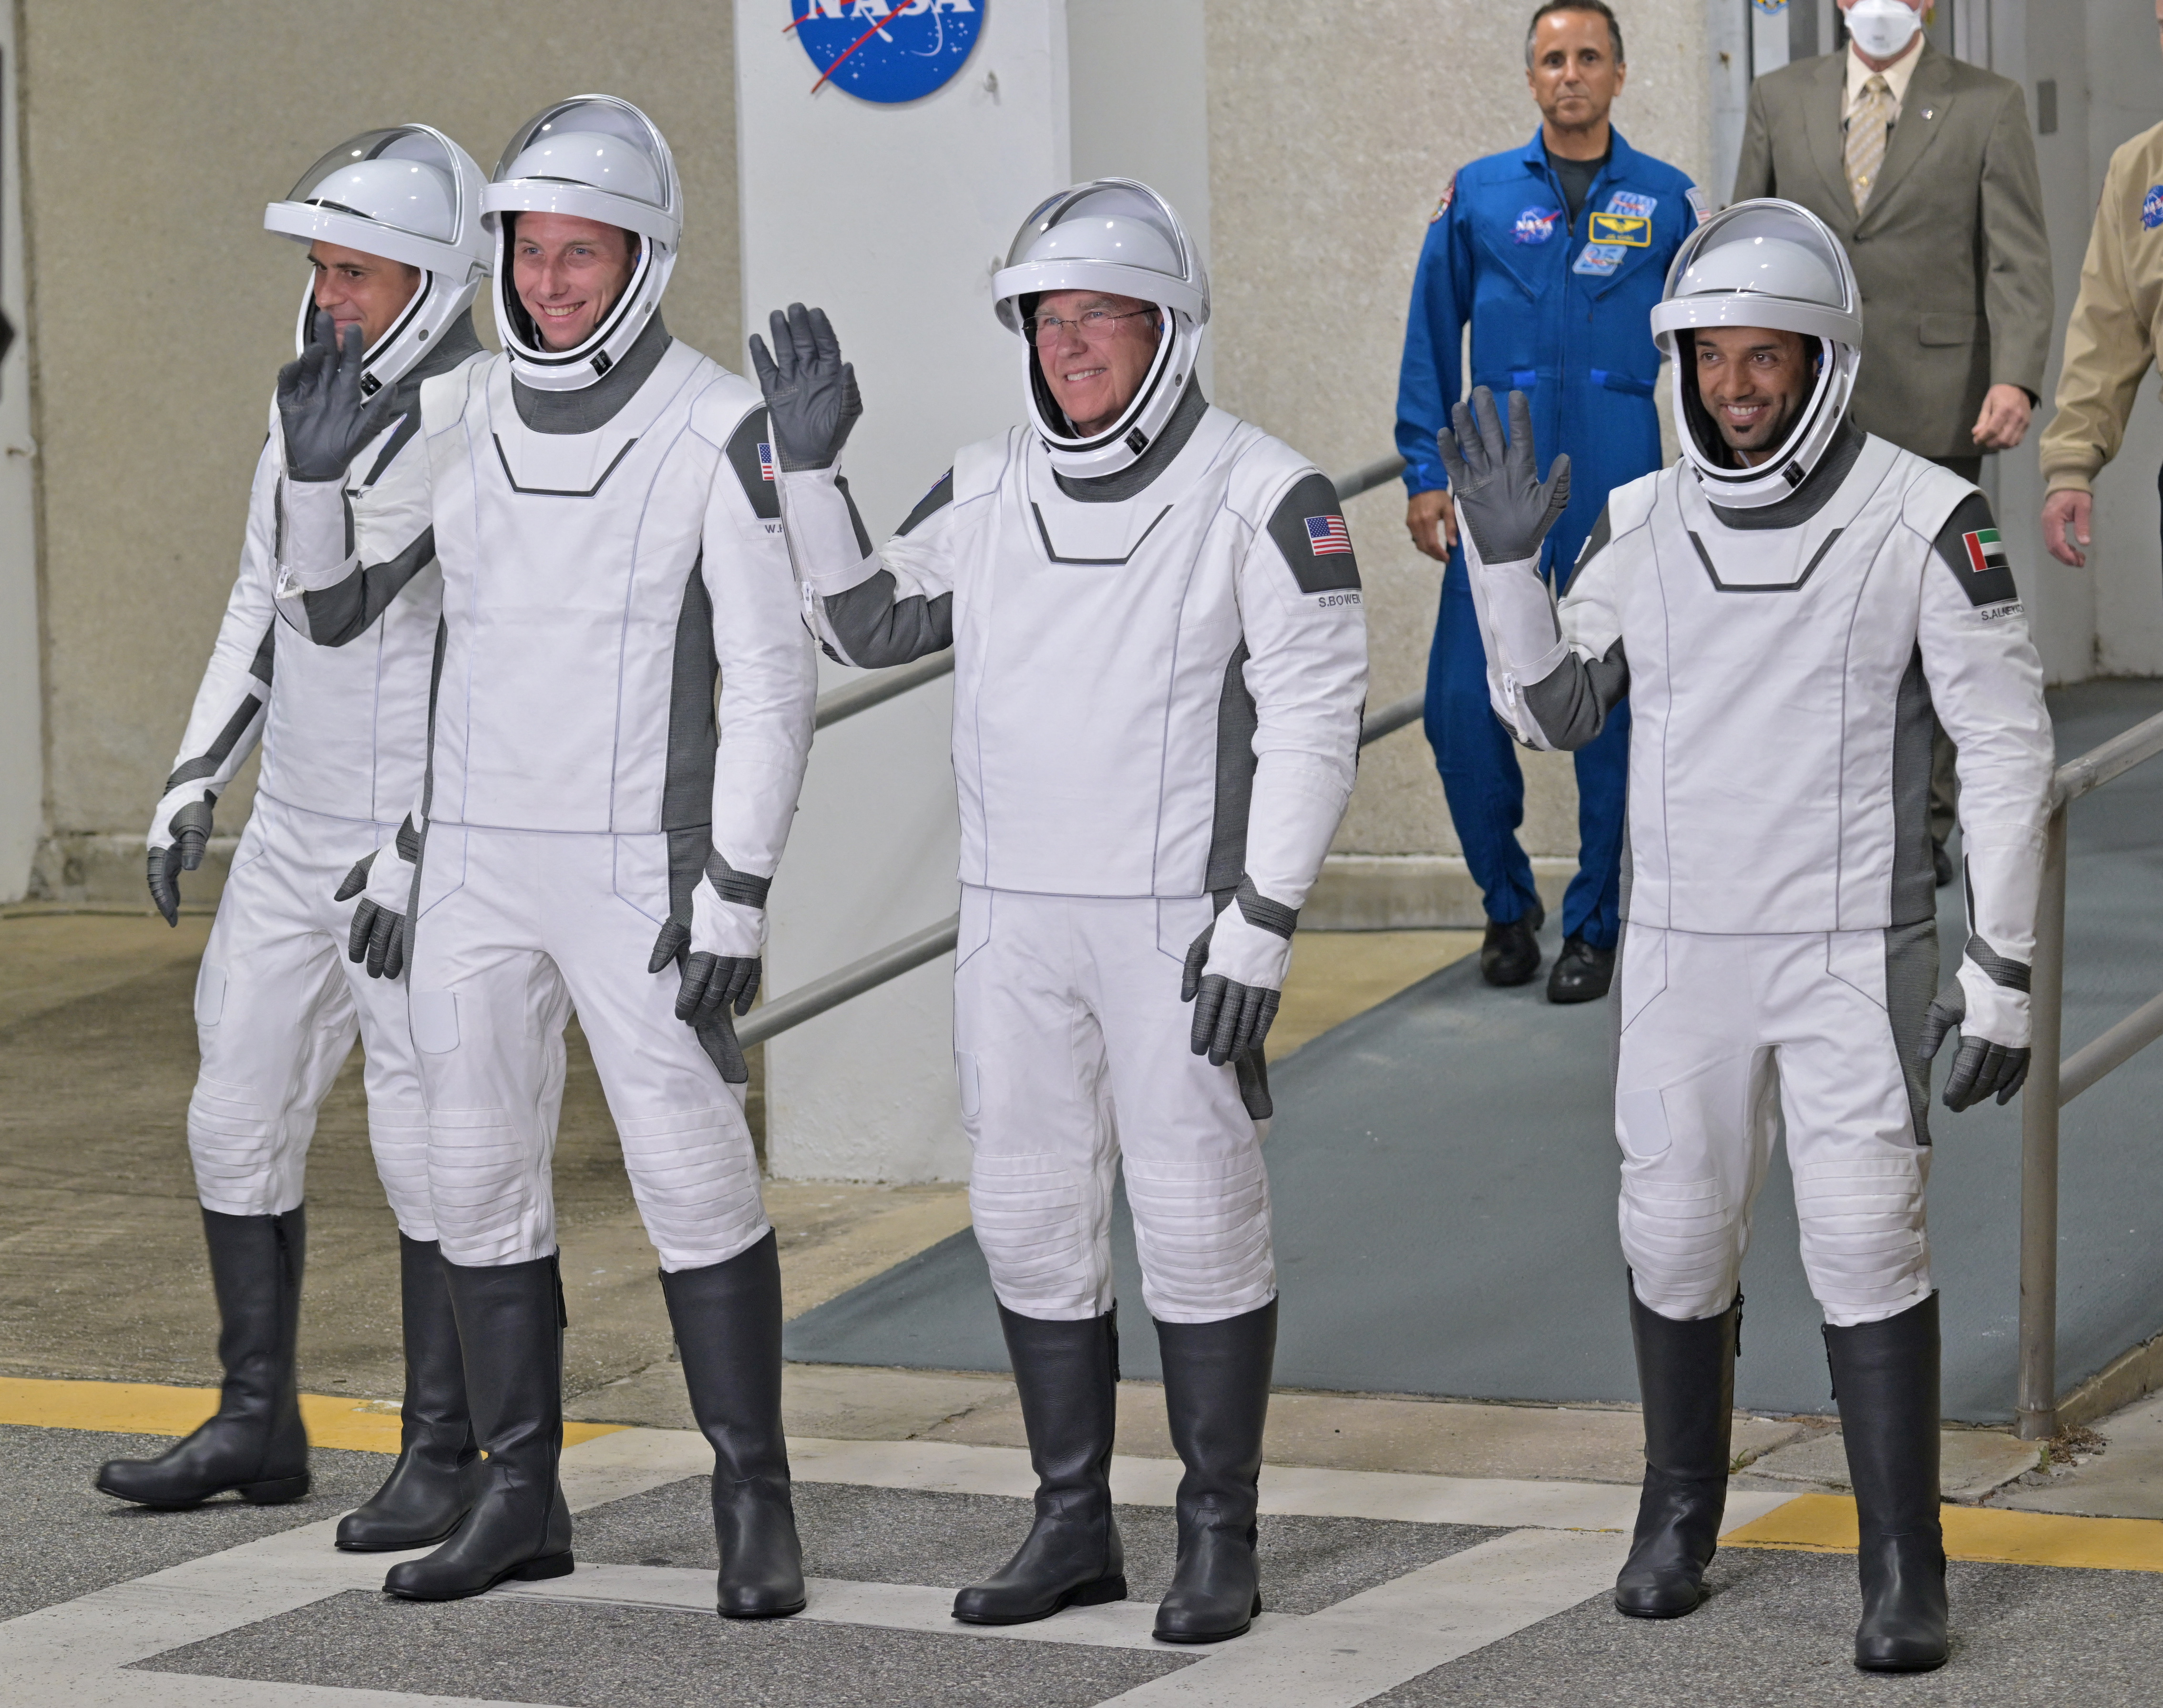 A bordo de la Endeavour, que con la Crew-6 cumple su cuarta misión, van Stephen Bowen y Warren Hoburg, de la agencia estadounidense NASA, comandante y piloto de la misión, respectivamente, y los especialistas Sultan Alneyadi, de la agencia espacial de los Emiratos Árabes Unidos, y Andrey Fedyaev, de la rusa Roscosmos. (REUTERS)